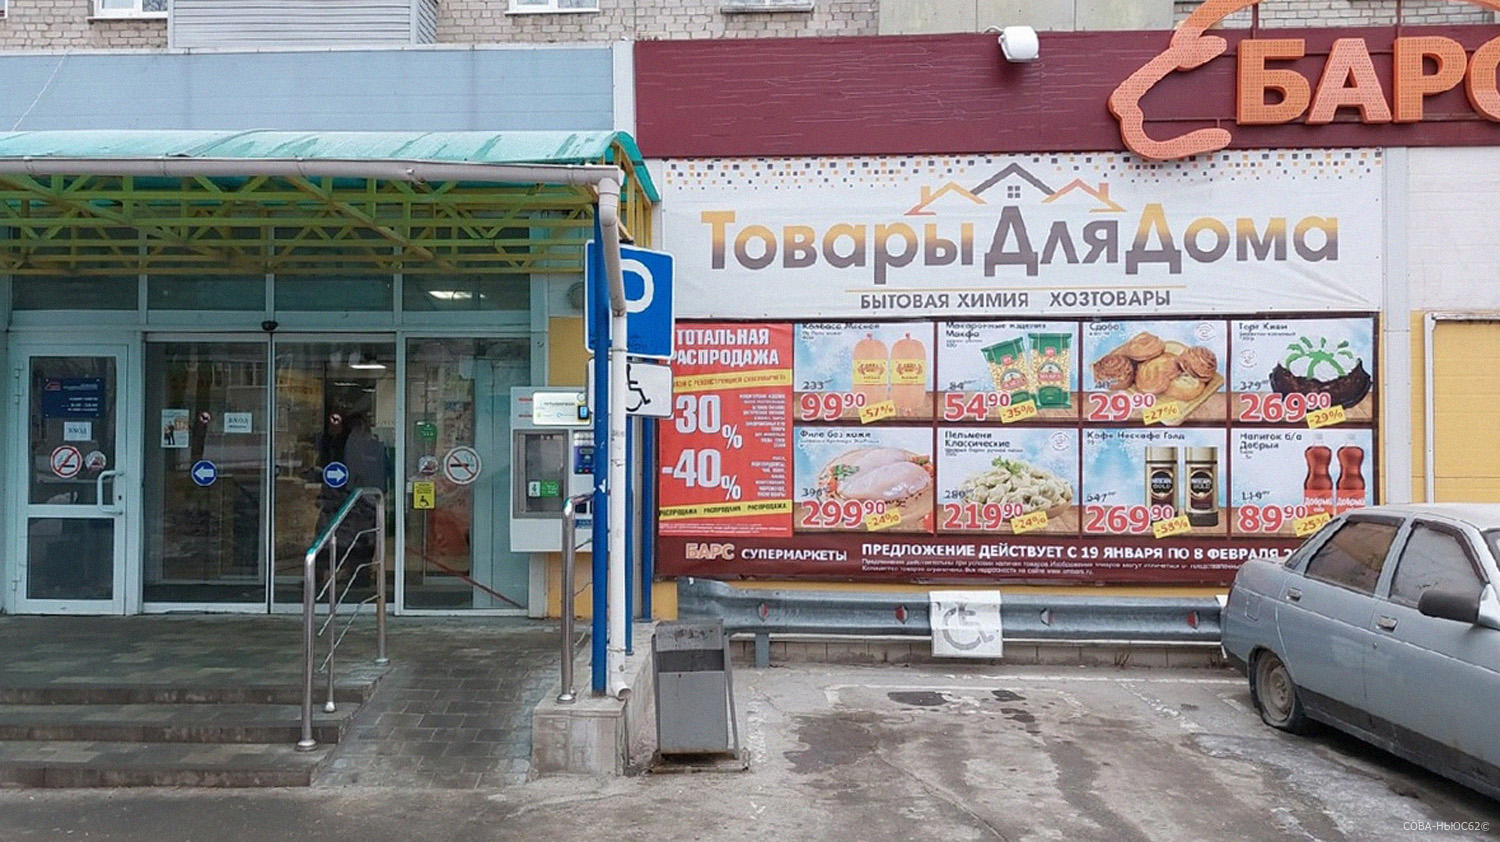 Жители улицы Пирогова в Рязани говорят о закрытии супермаркета «Барс»